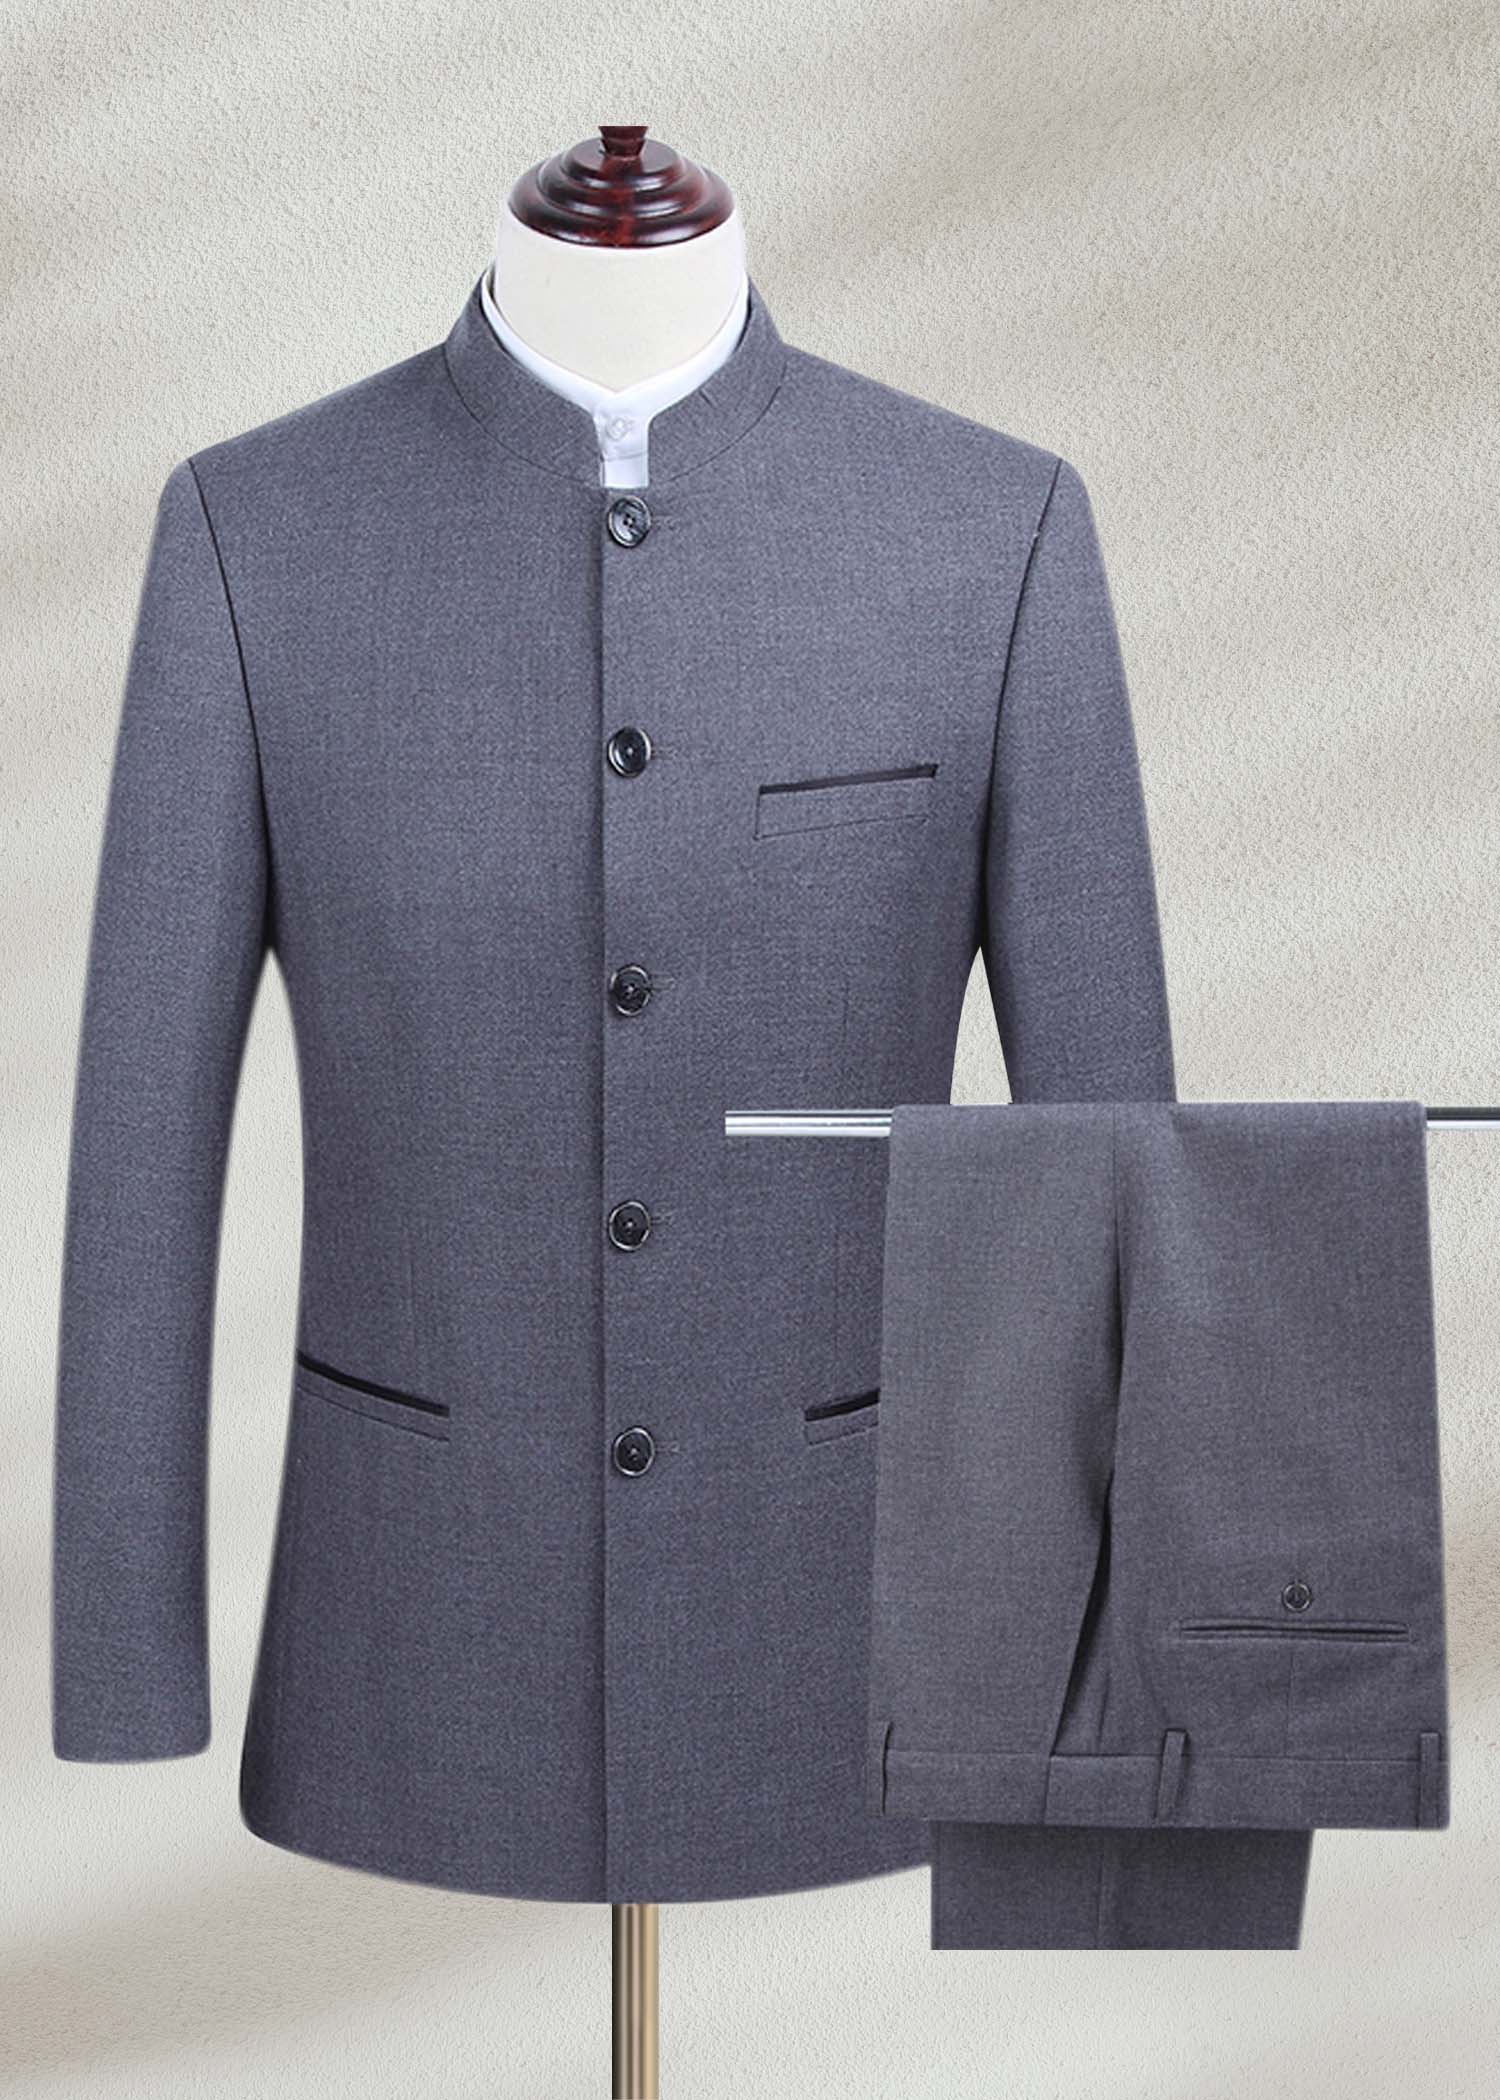 Men's Grey Prince Suit - Shameel Khan